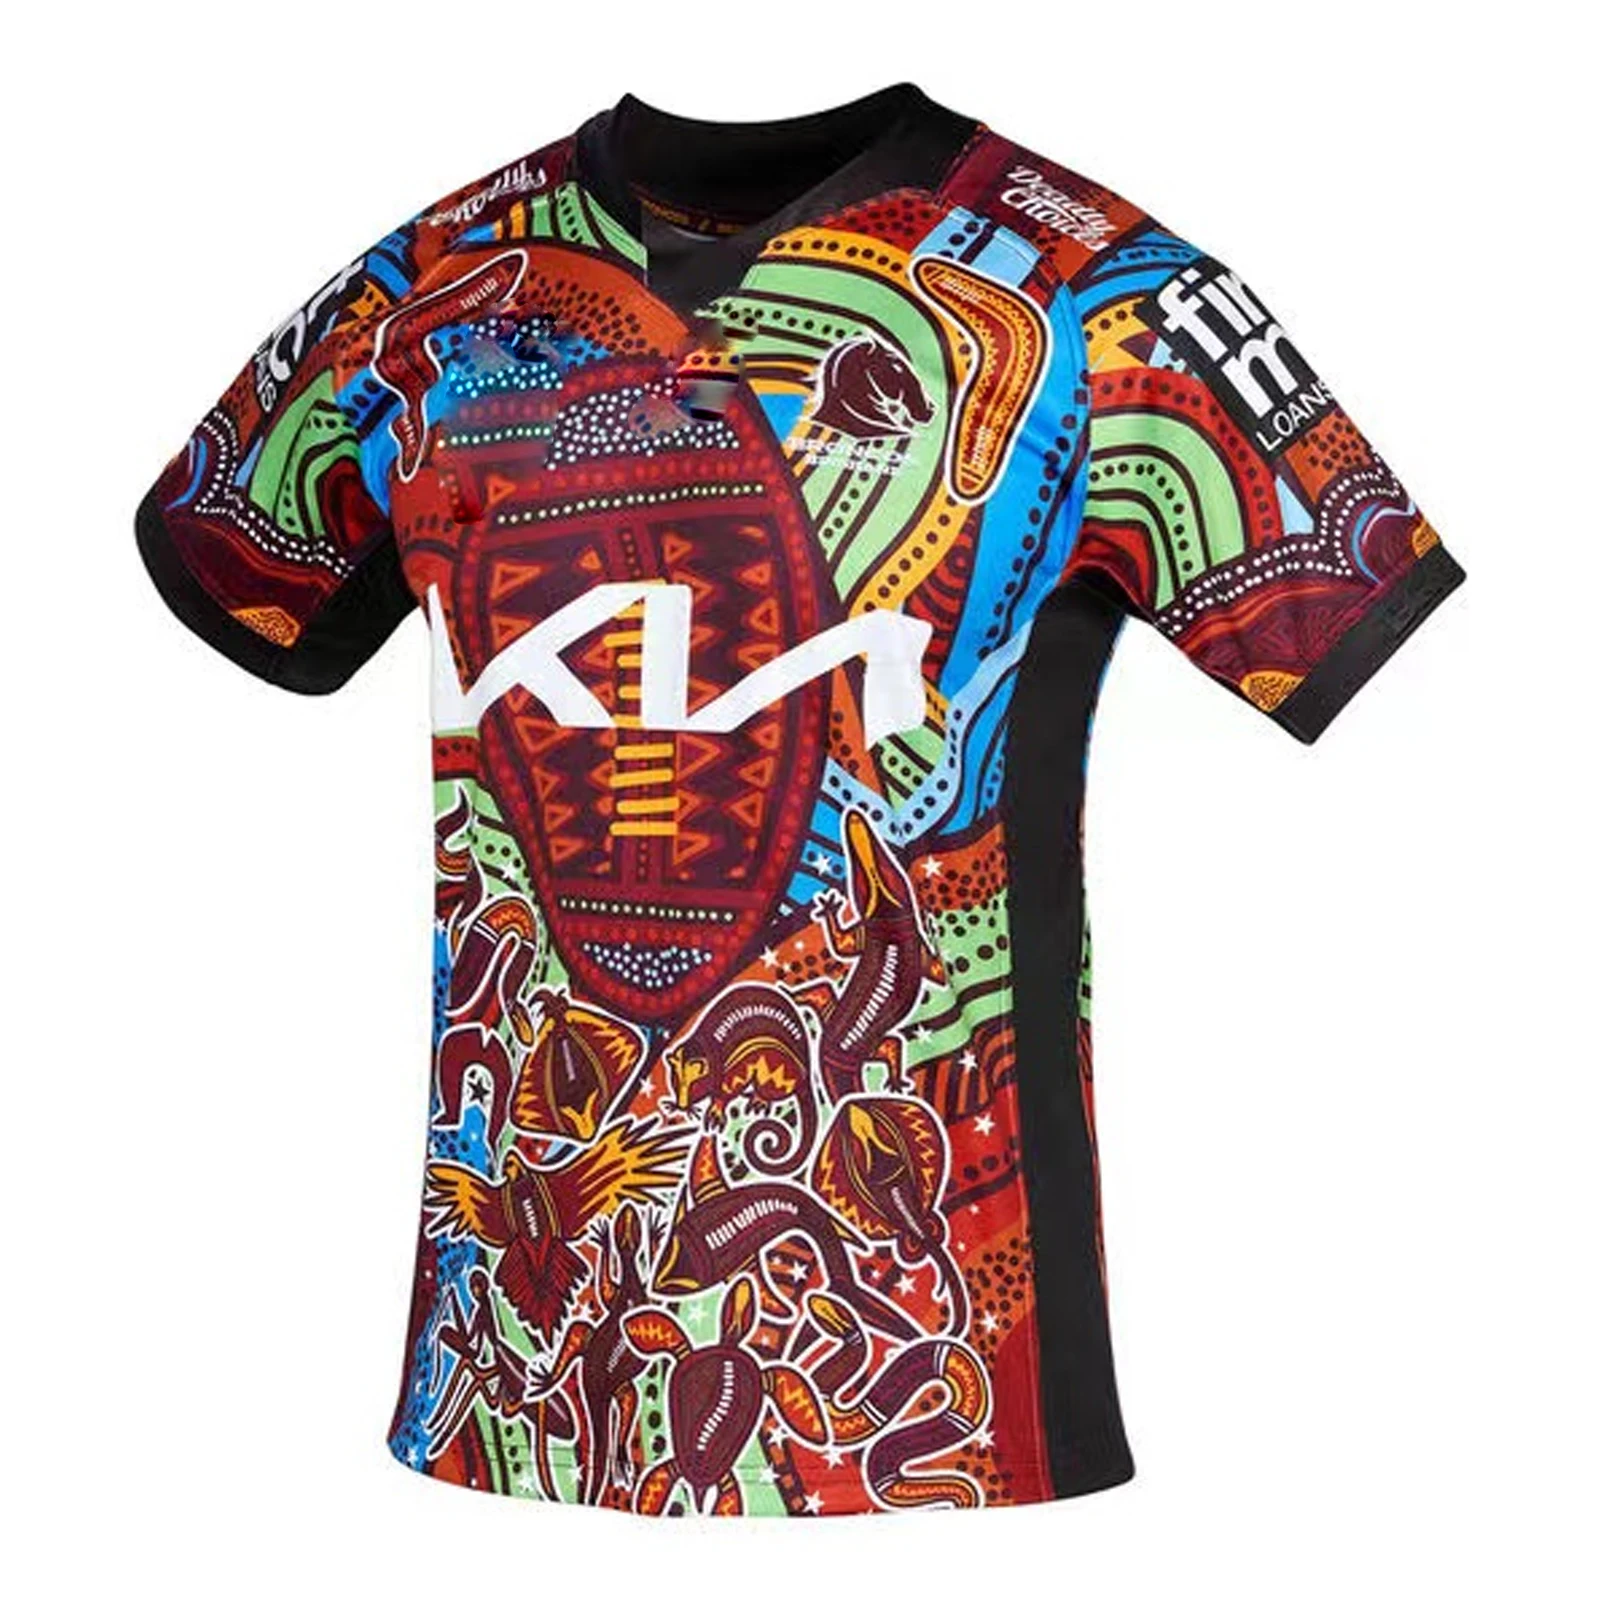 Camiseta deportiva de Rugby, prenda de vestir, con estampado de los Broncos en el hogar/visitante/Heritage, modelo S-5XL, 2022